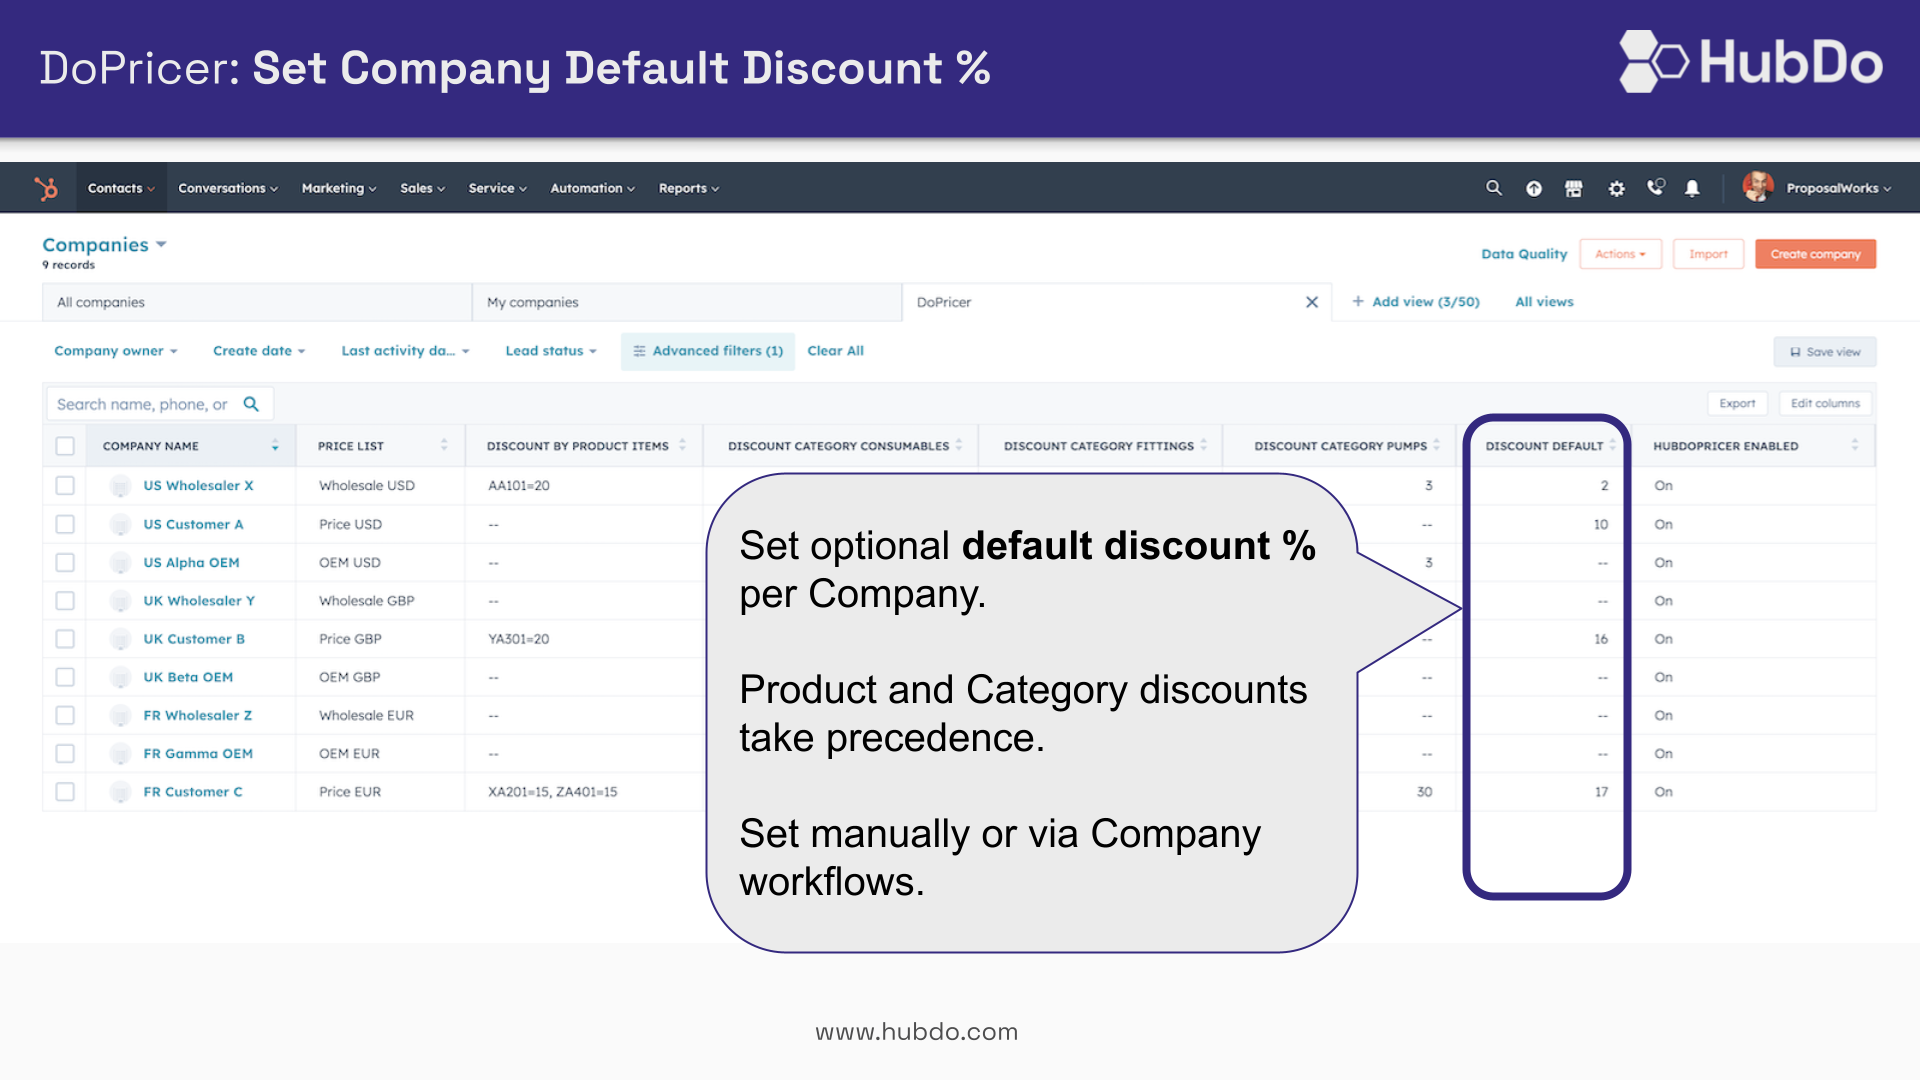 Set optional default discount per company